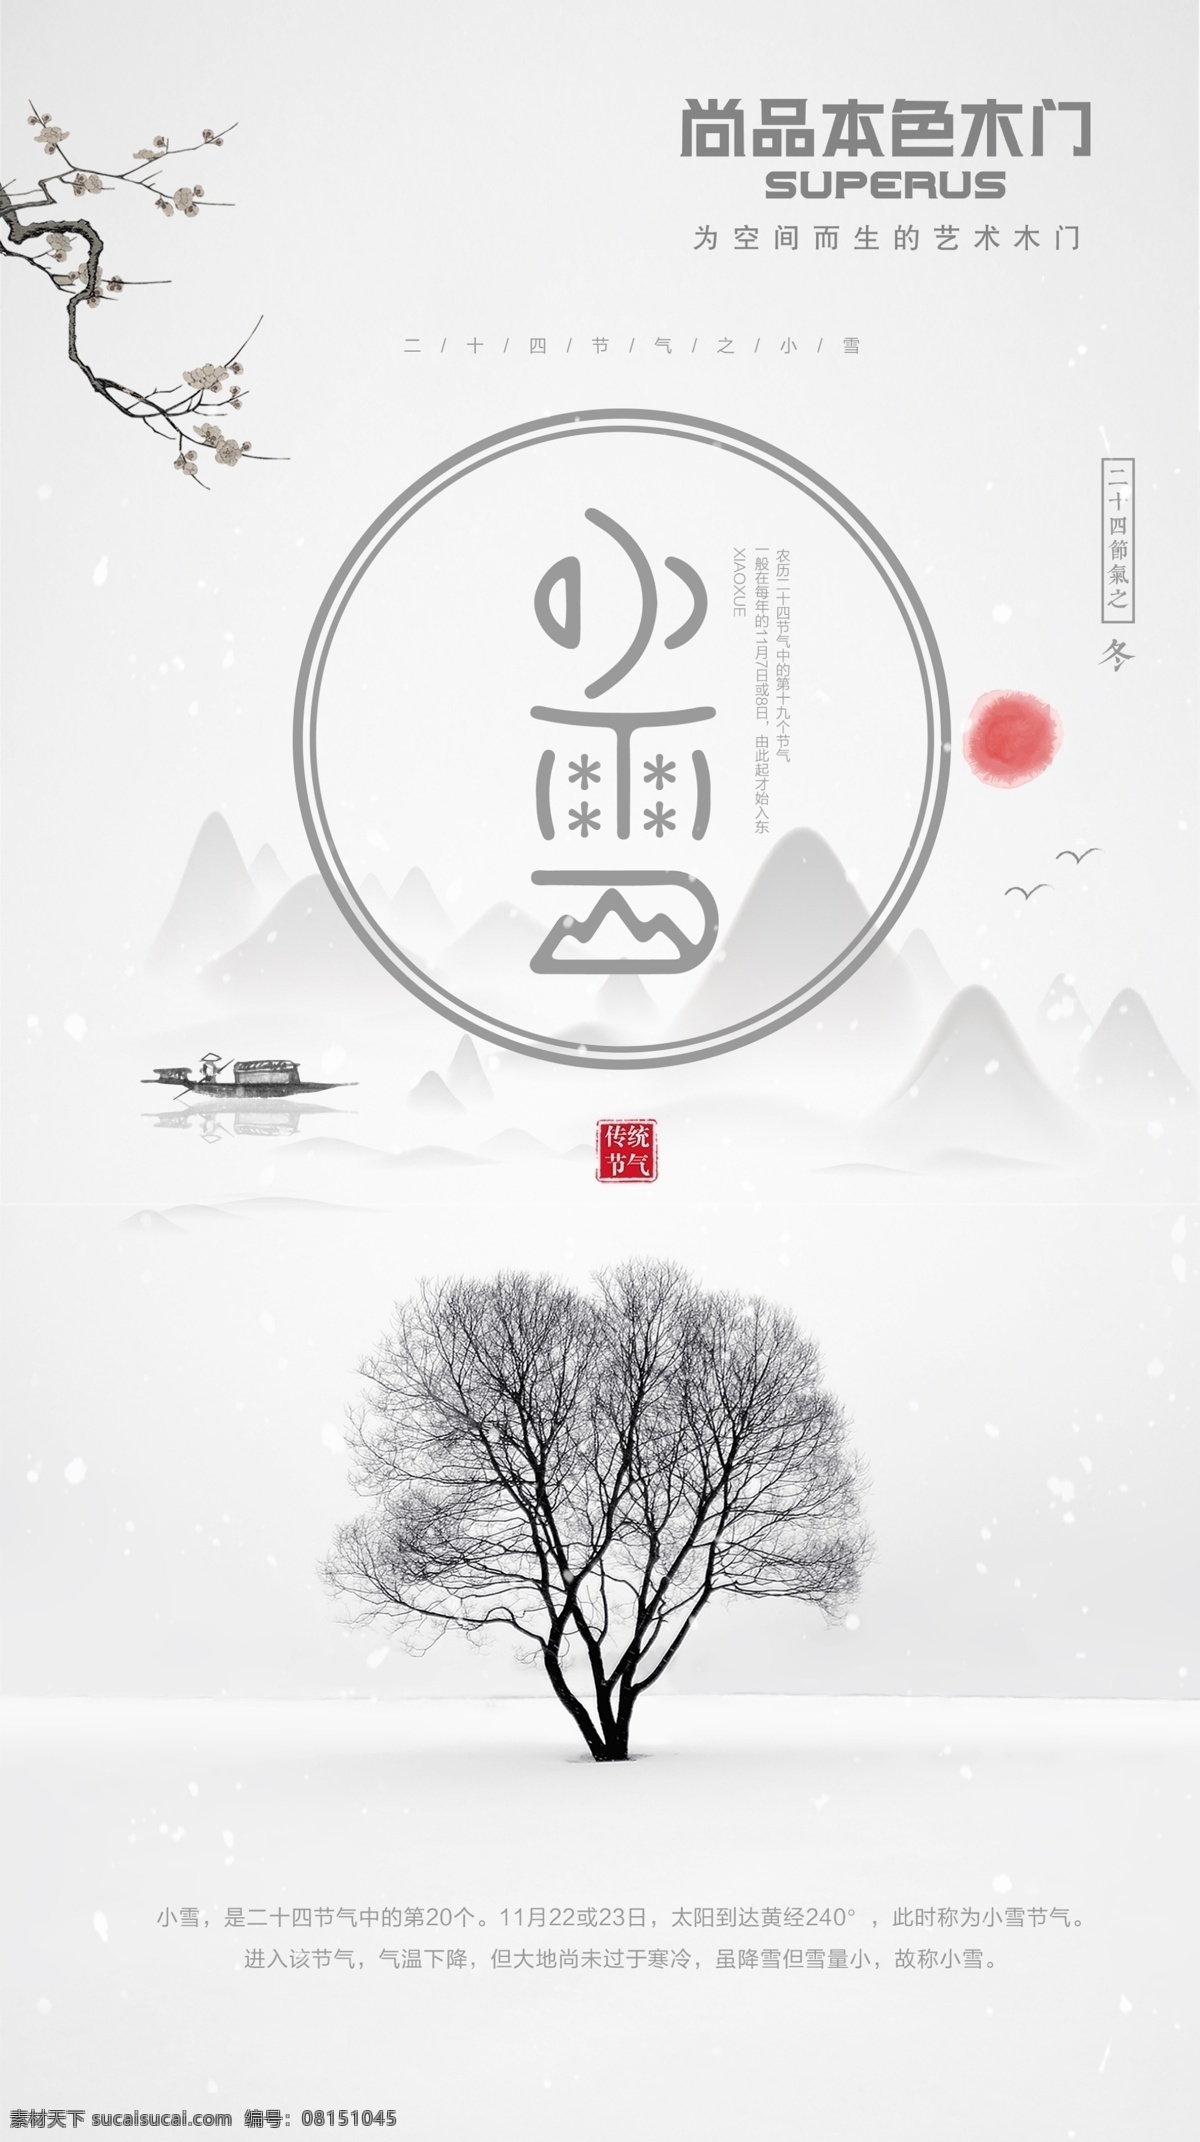 二十四节气 小雪 冬天 雪人 寒冷 雪花 文化艺术 节日庆祝